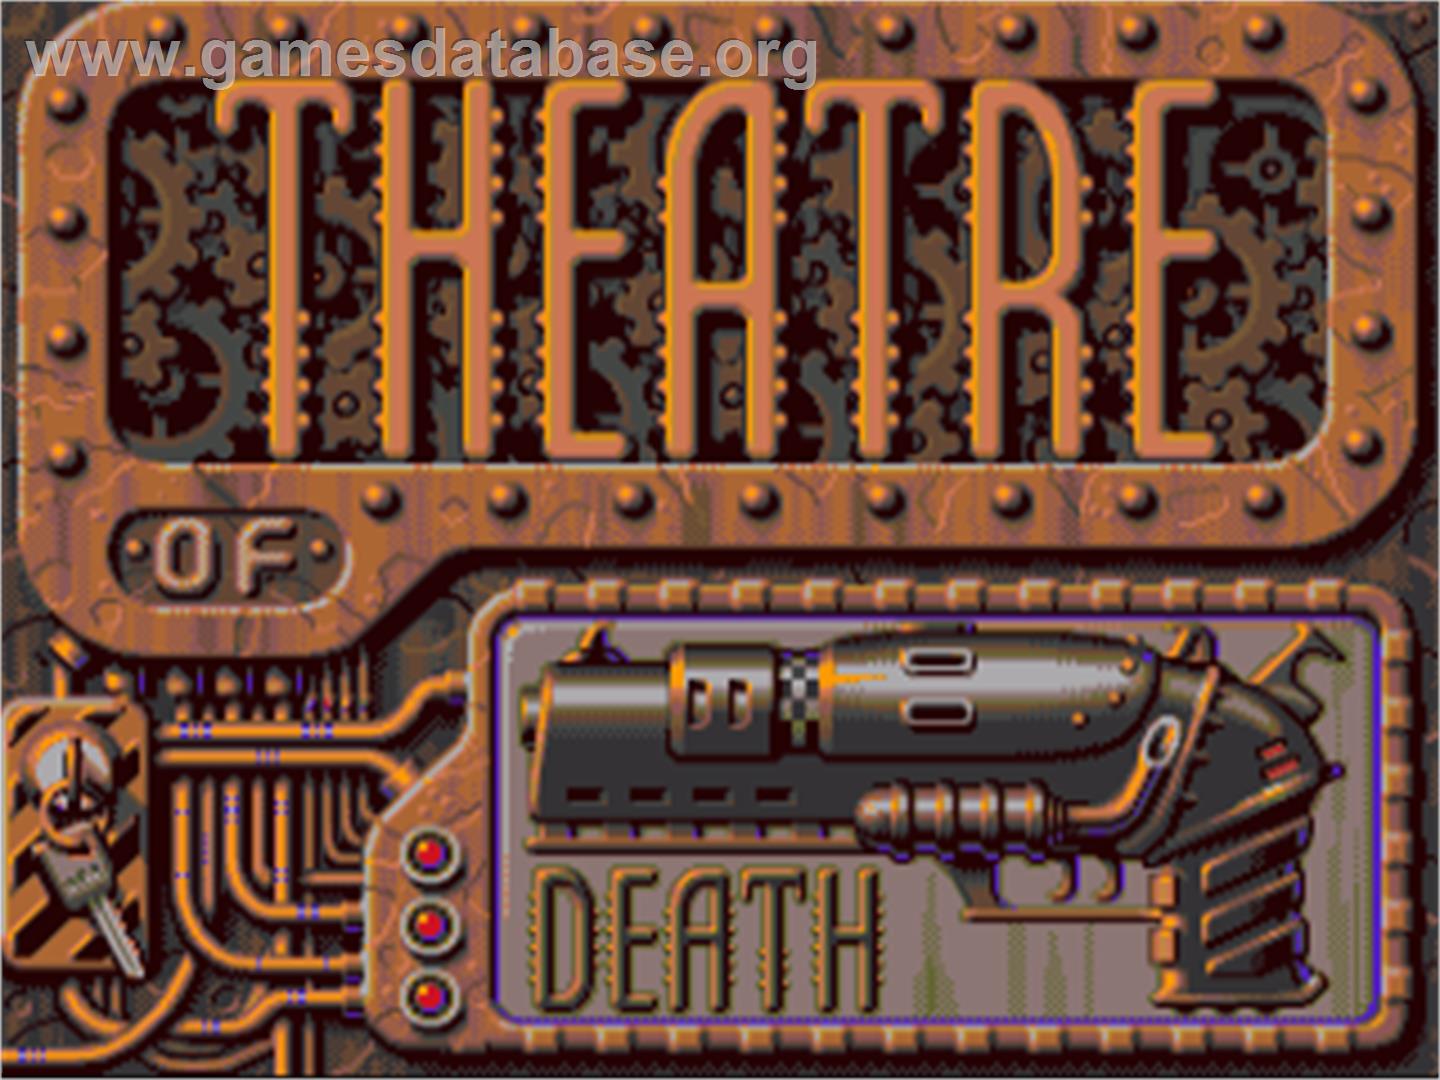 Theatre of Death - Commodore Amiga - Artwork - Title Screen